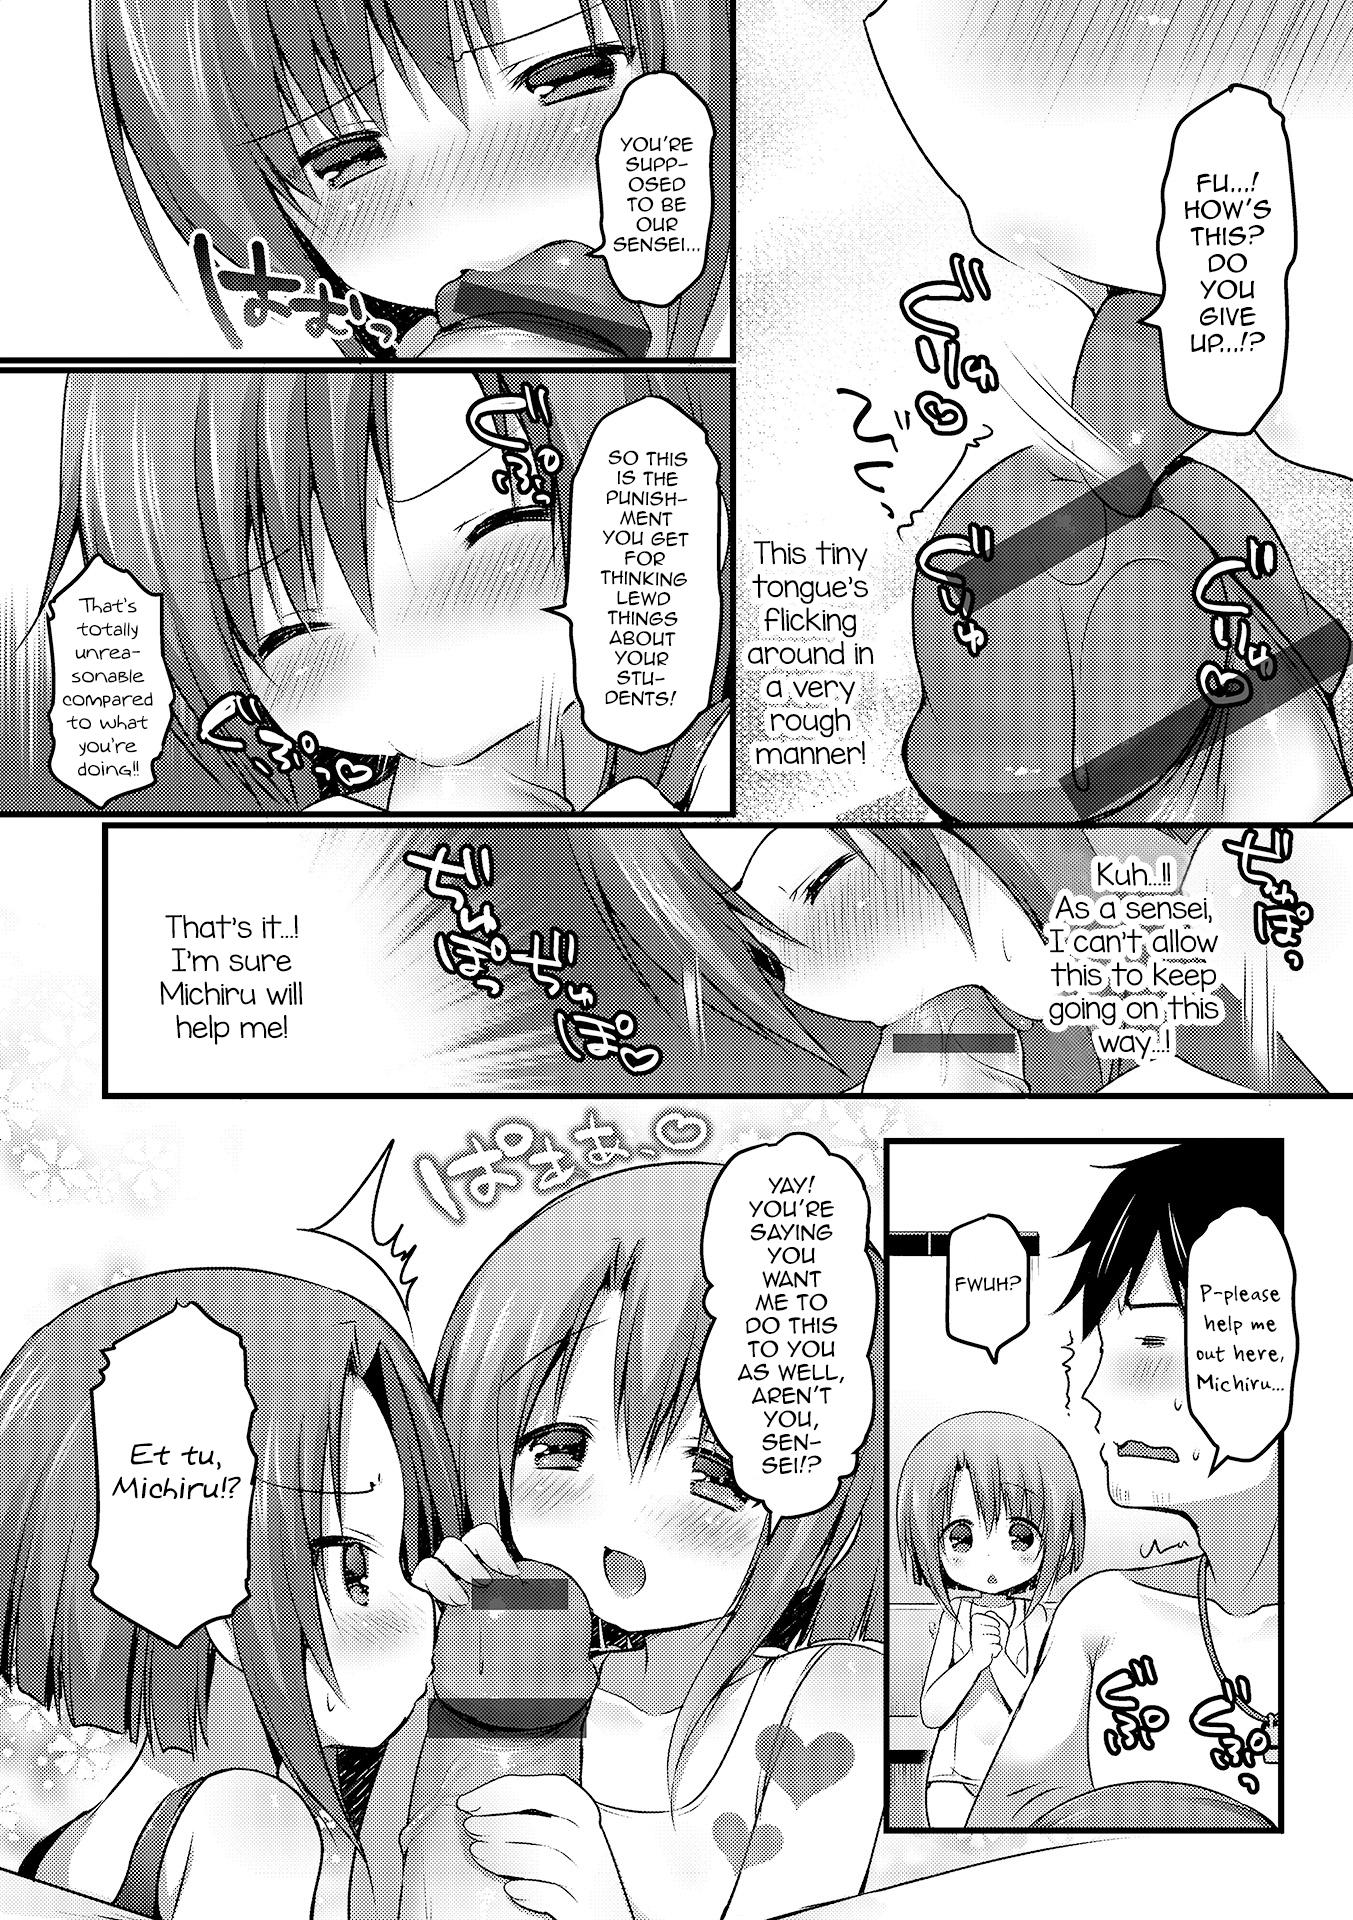 Mama Shirokuro tsukete kudasai! Con - Page 4